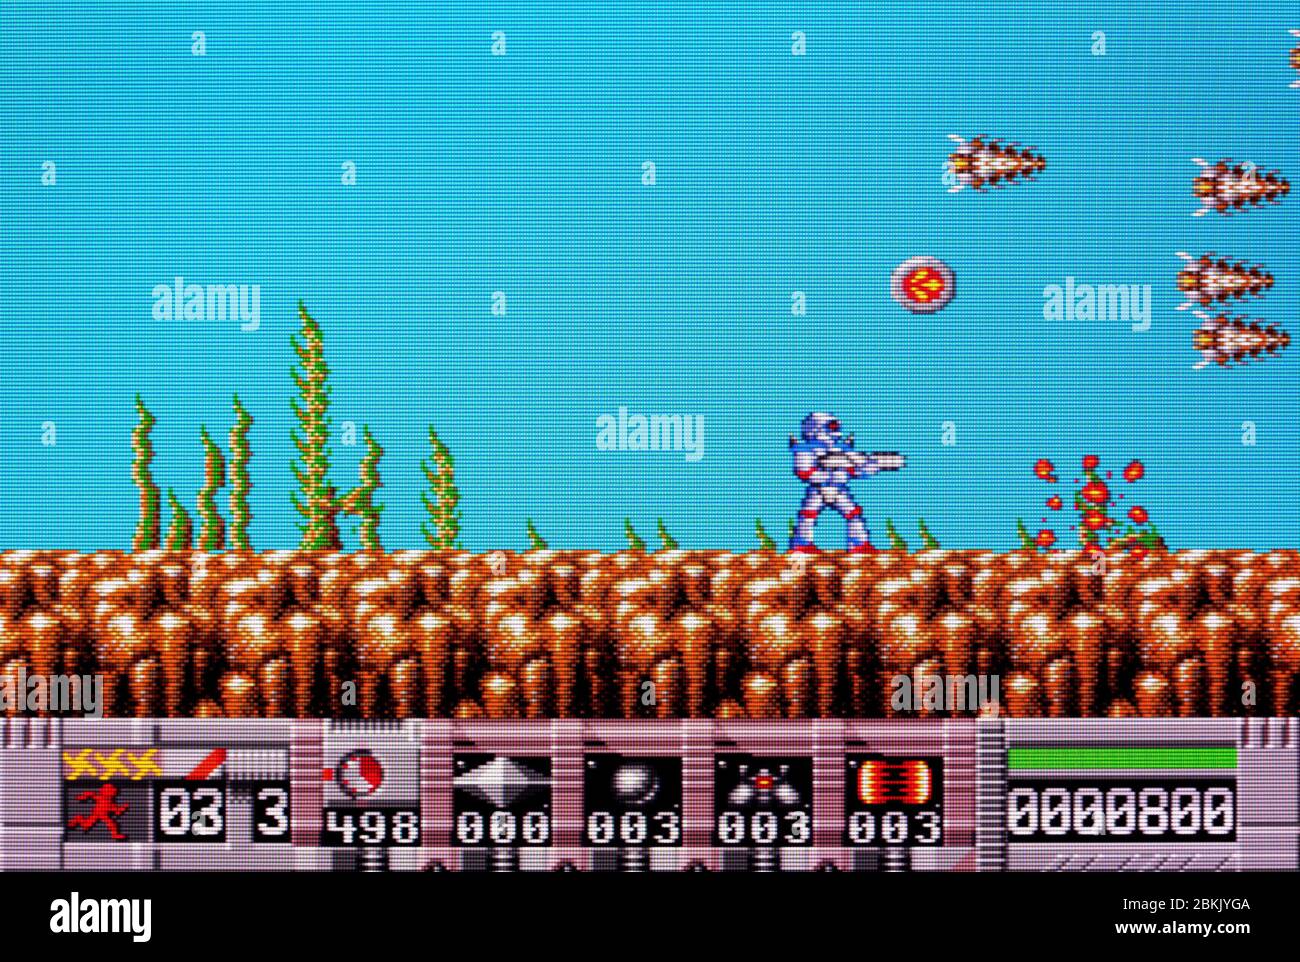 Turrican - Sega Genesis Mega Drive - nur zur redaktionellen Verwendung Stockfoto